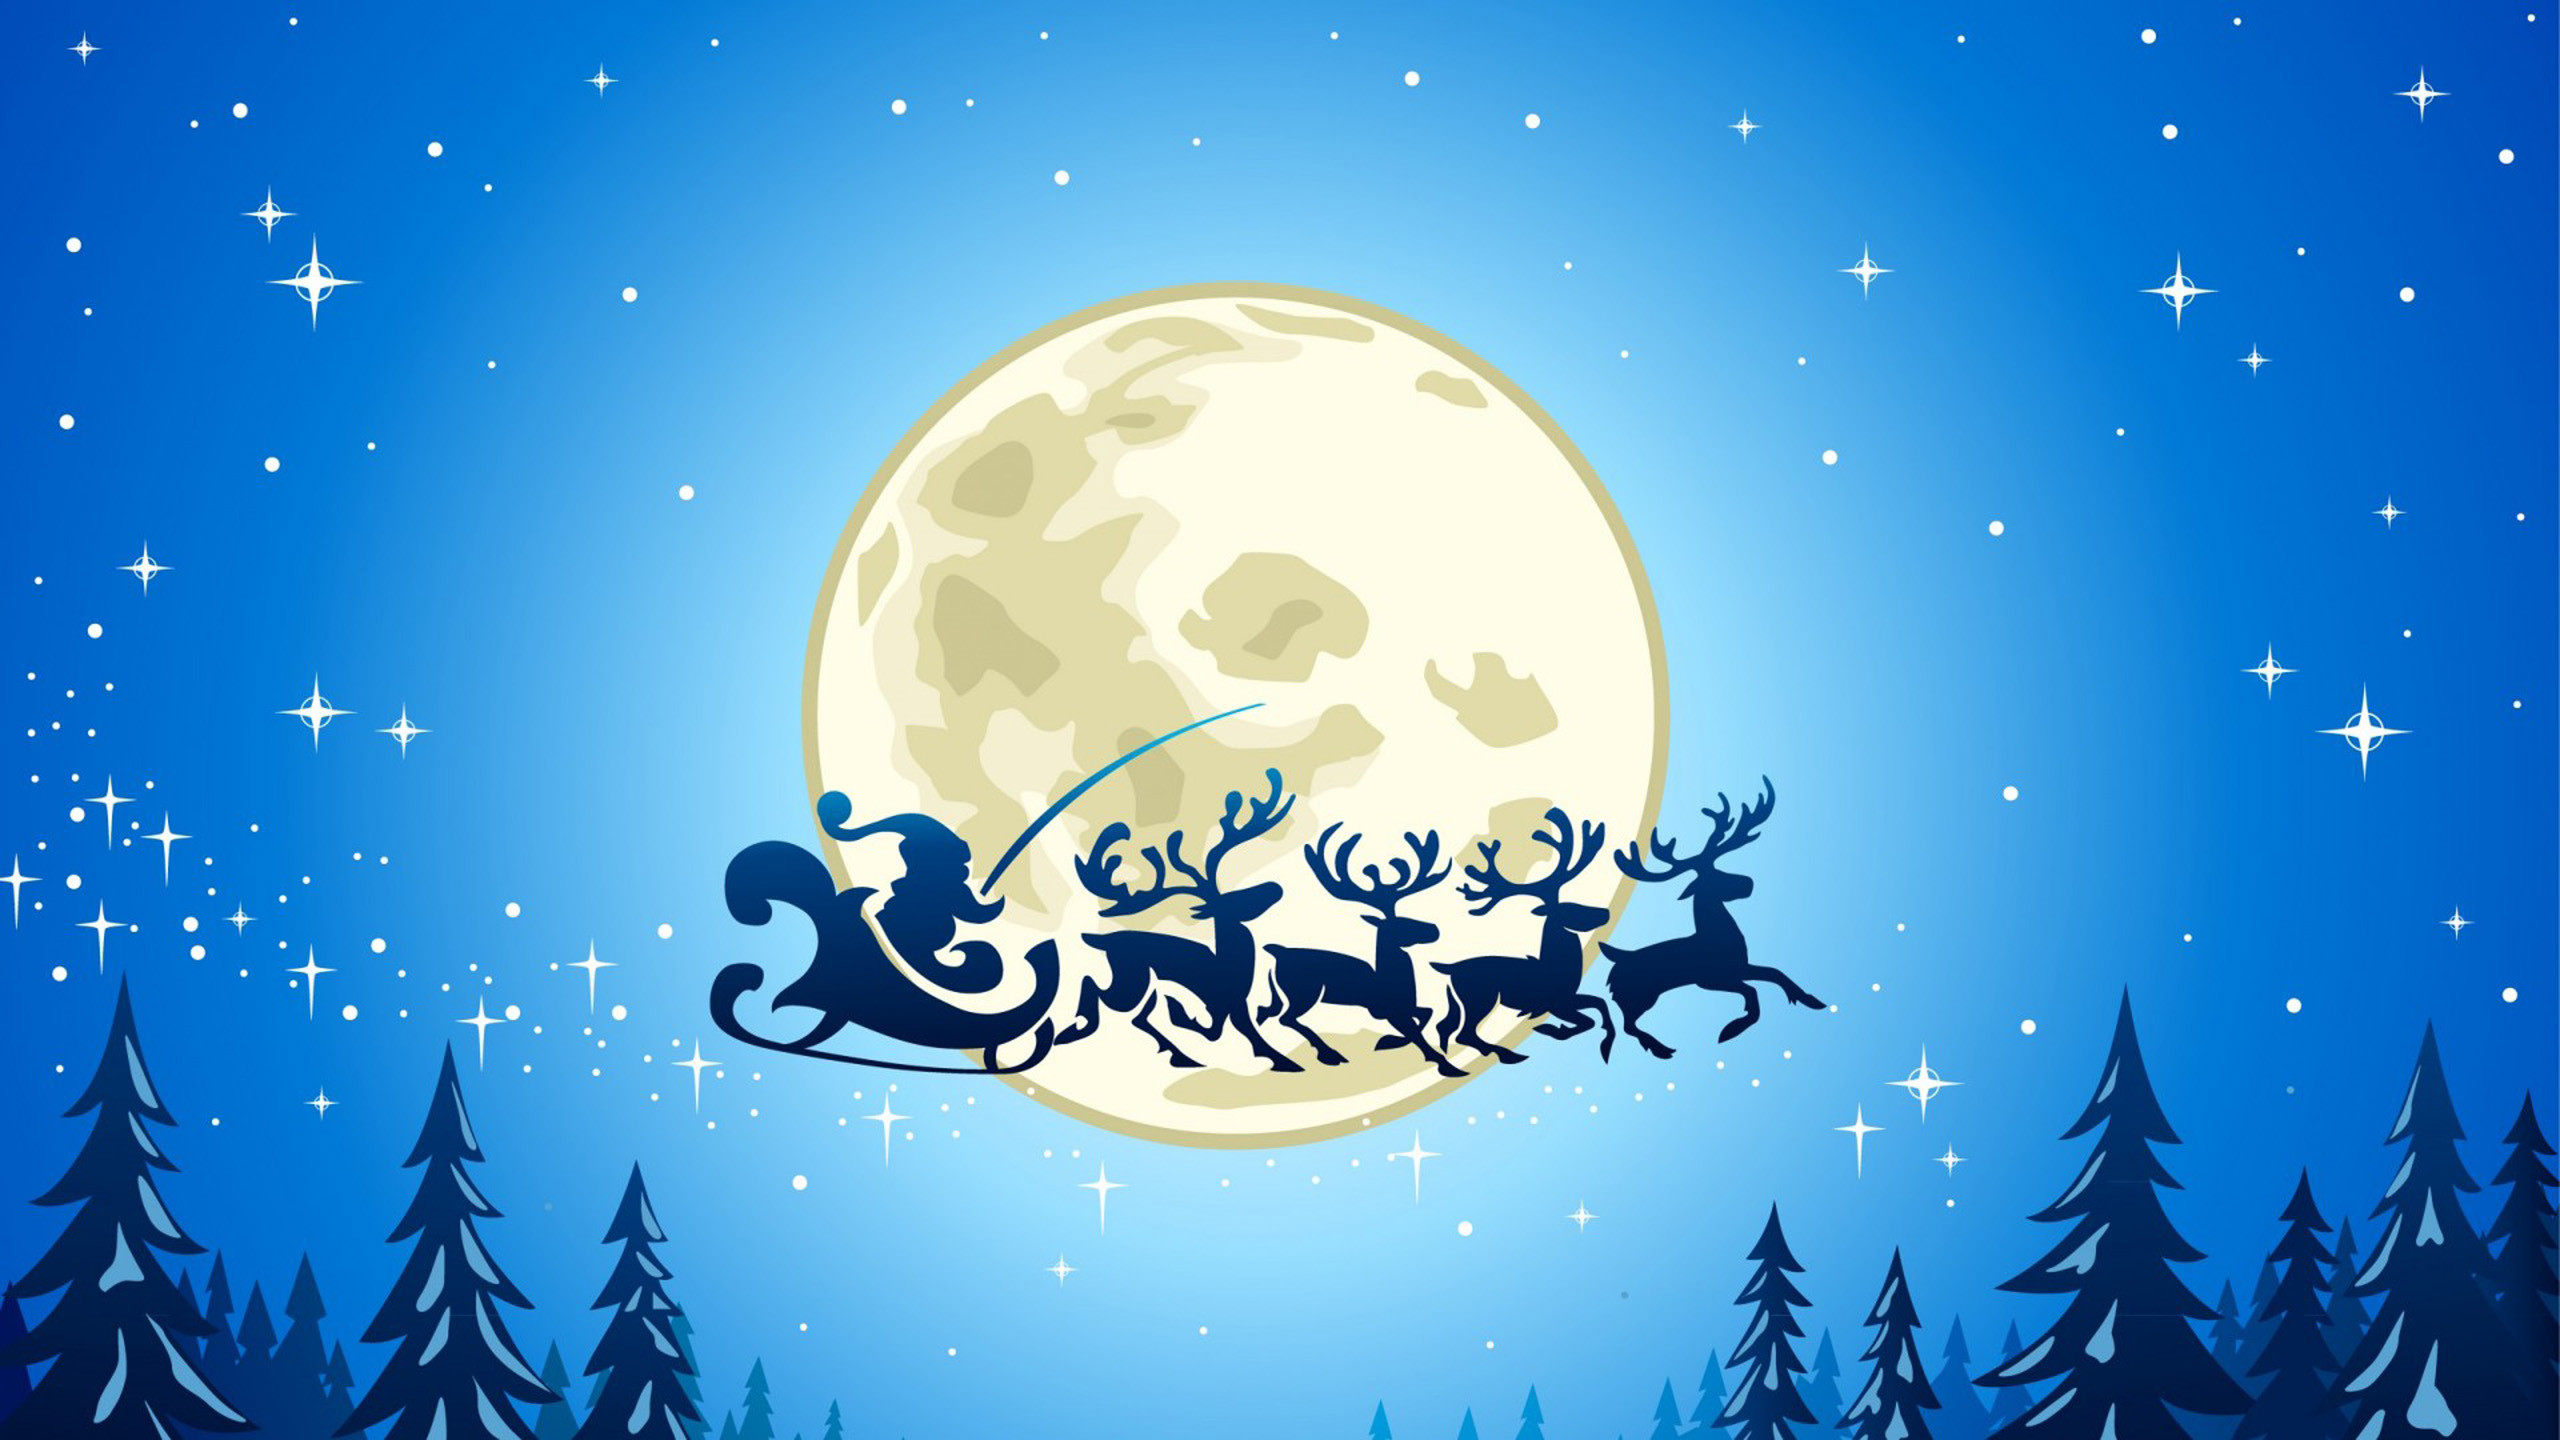 クリスマスのテーマの壁紙,空,クリスマス・イブ,図,月,木